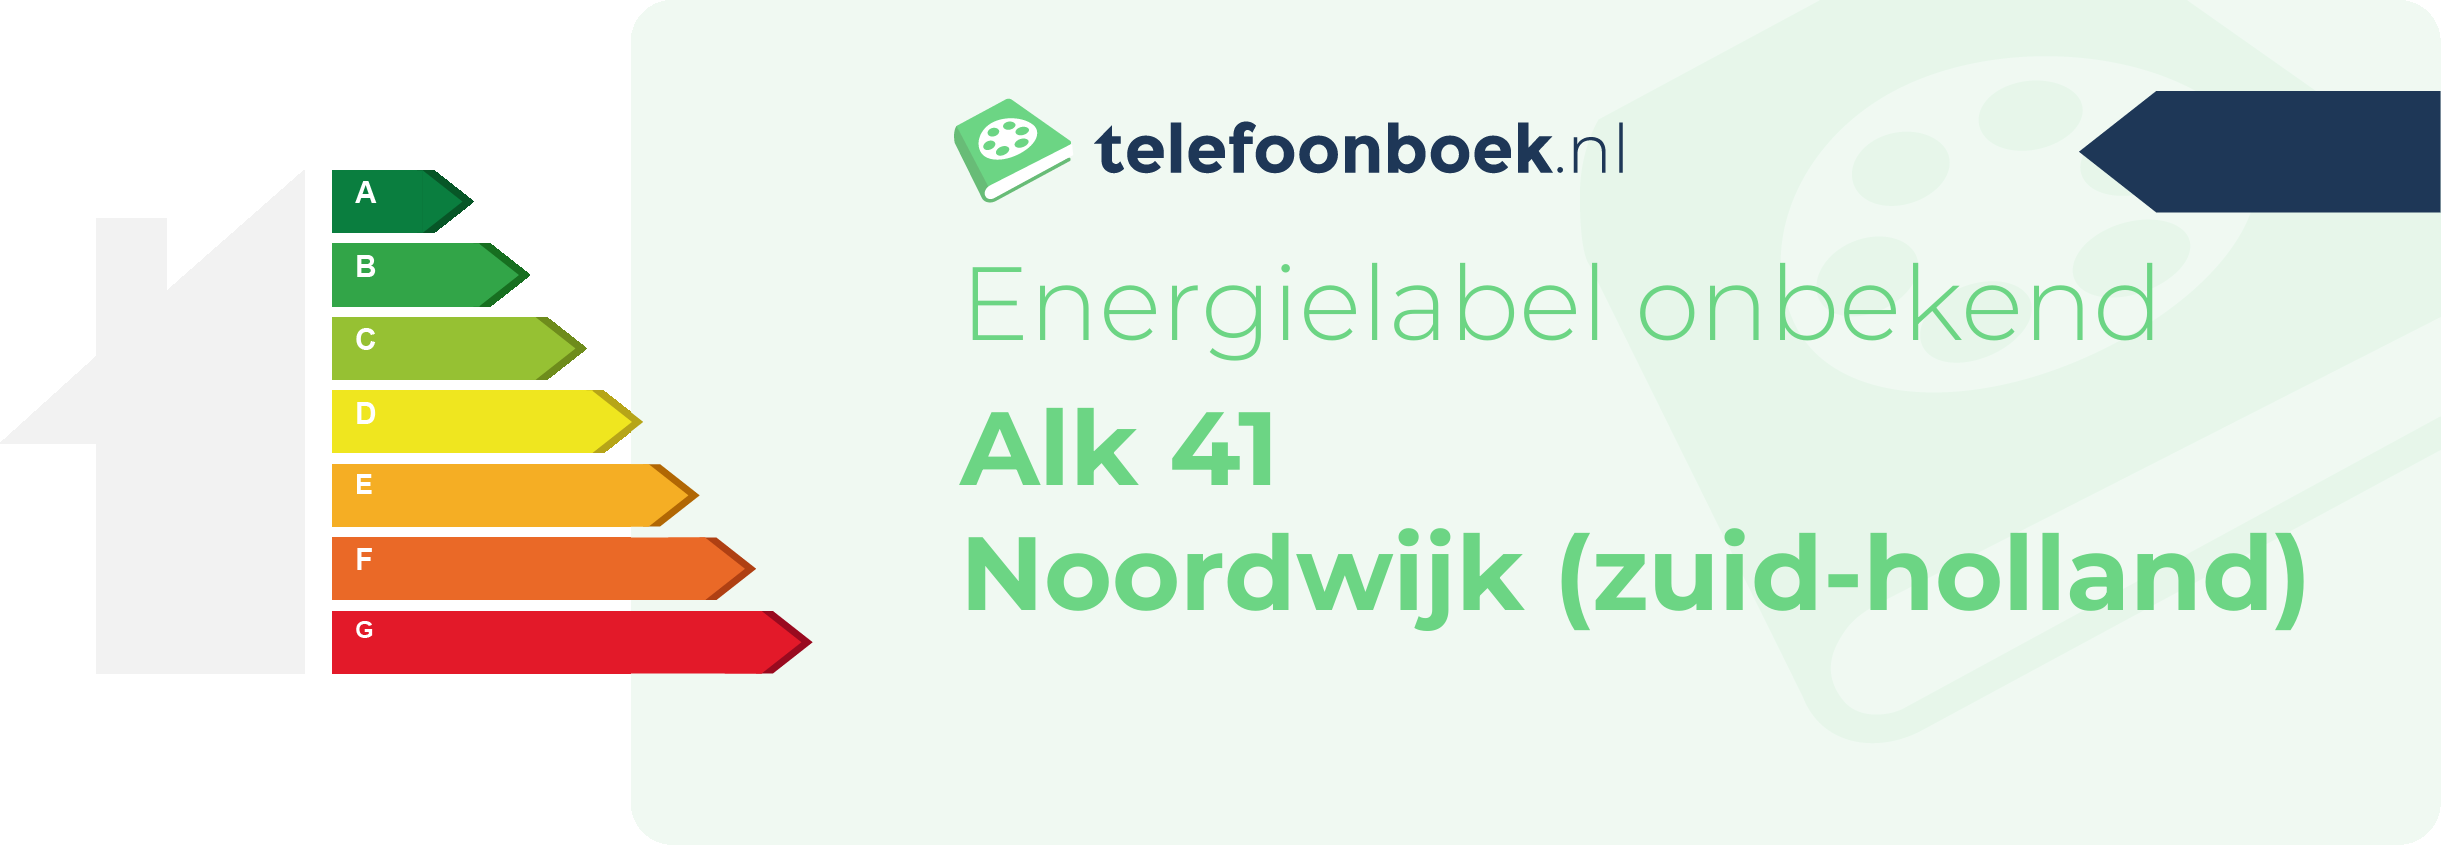 Energielabel Alk 41 Noordwijk (Zuid-Holland)